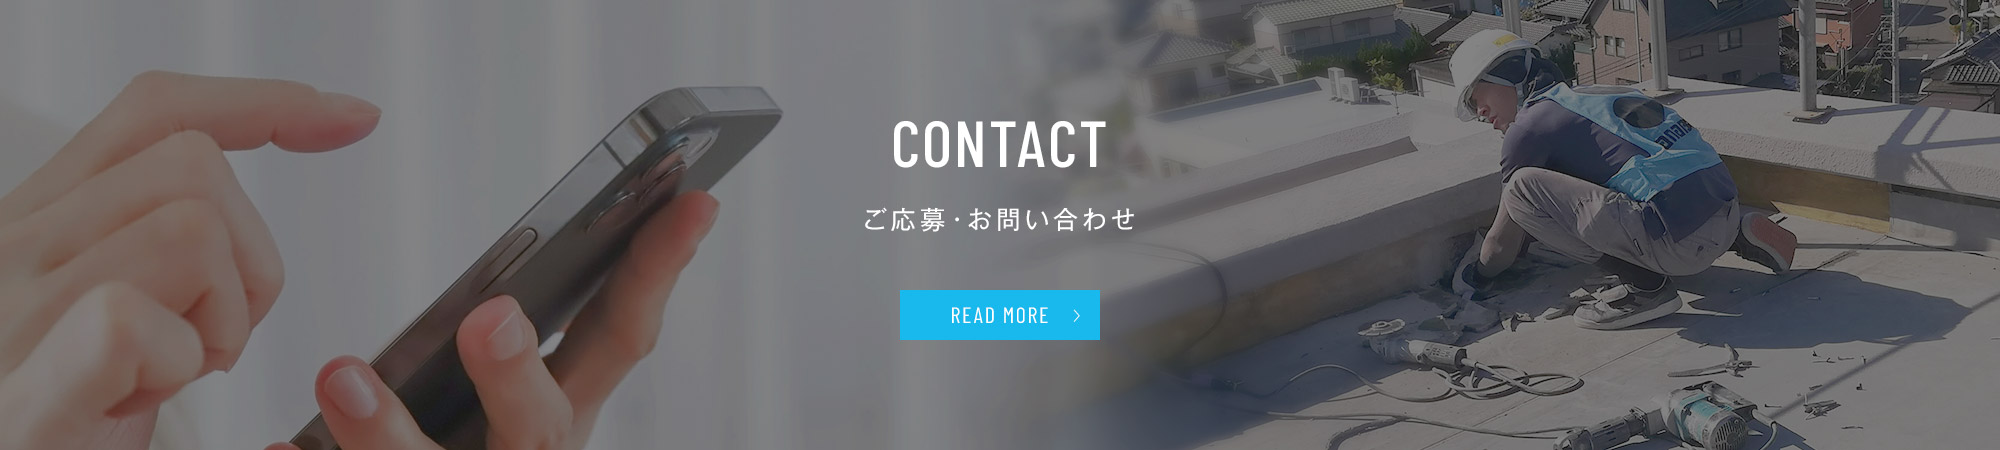 bnr_contact